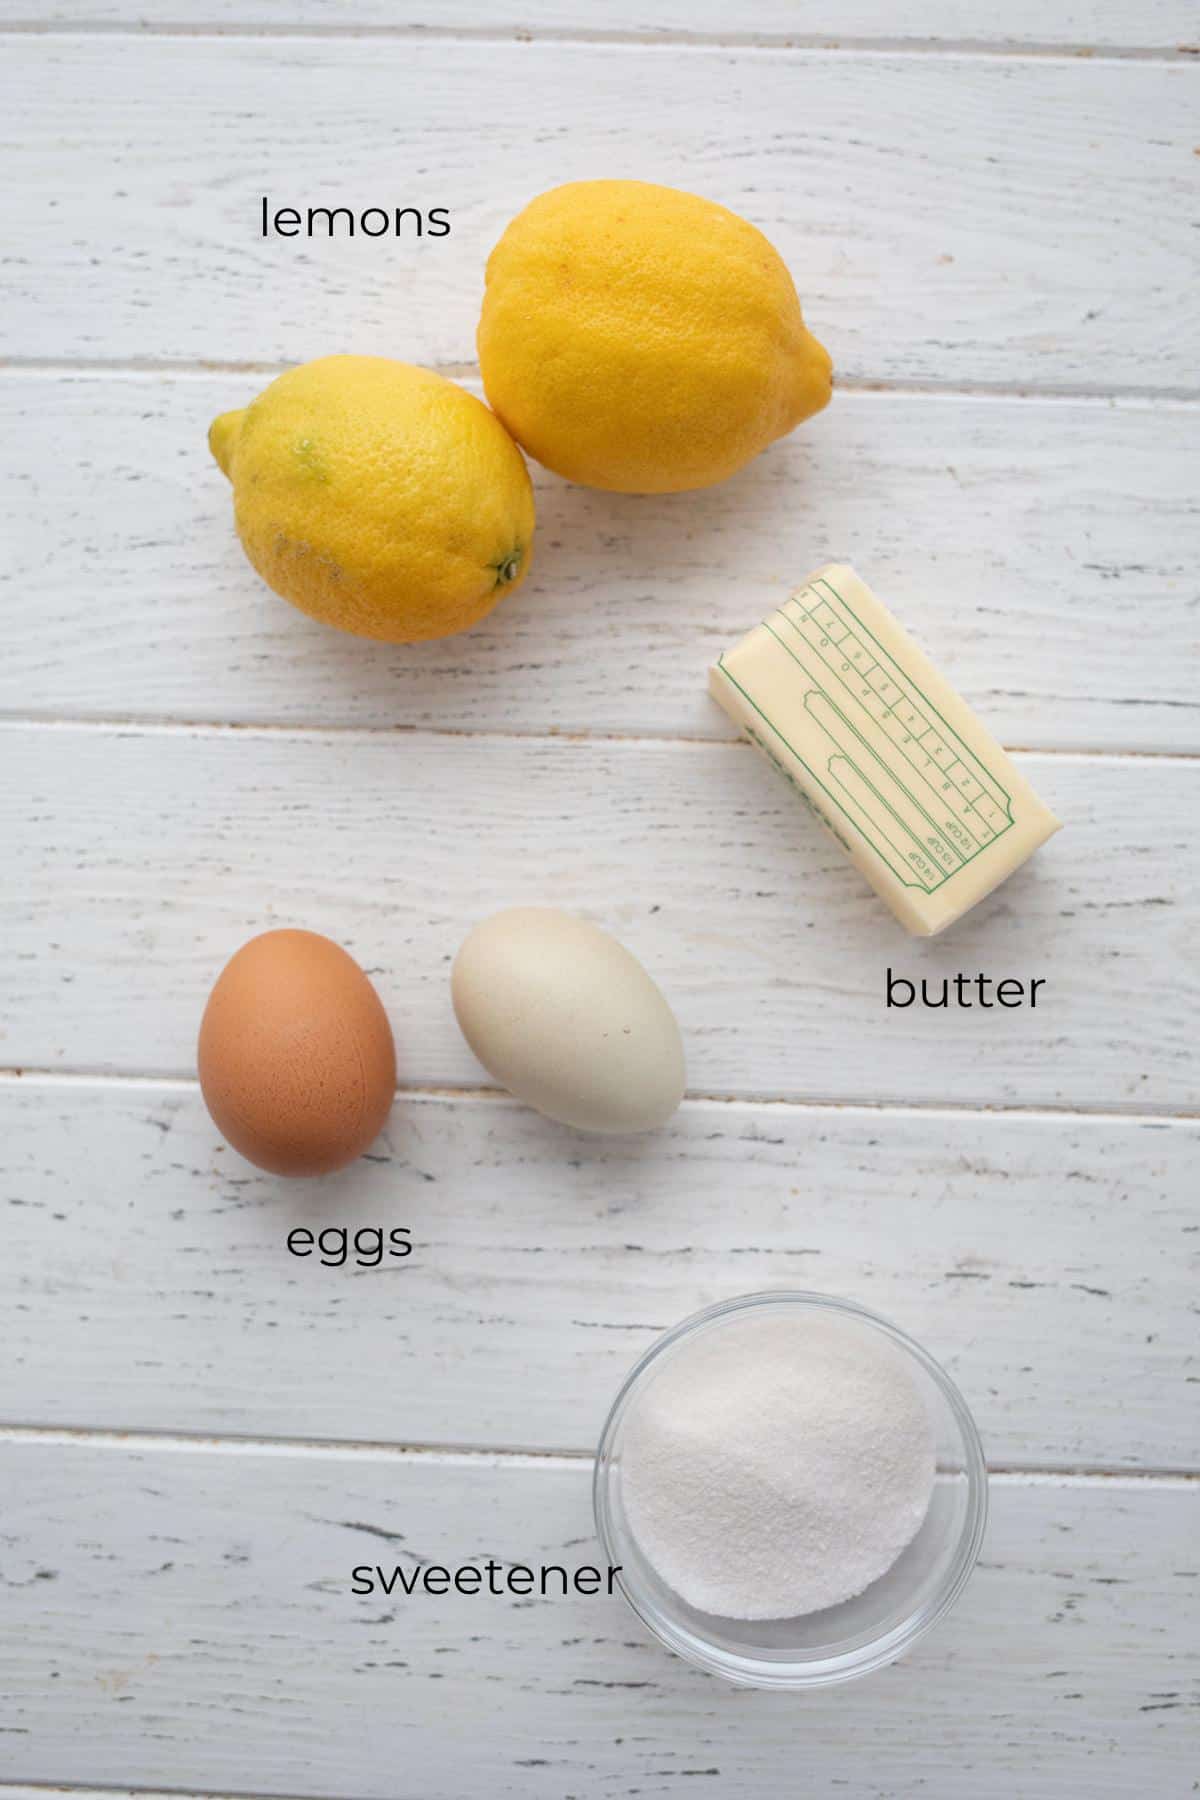 Top down image of ingredients needed for sugar-free lemon curd.